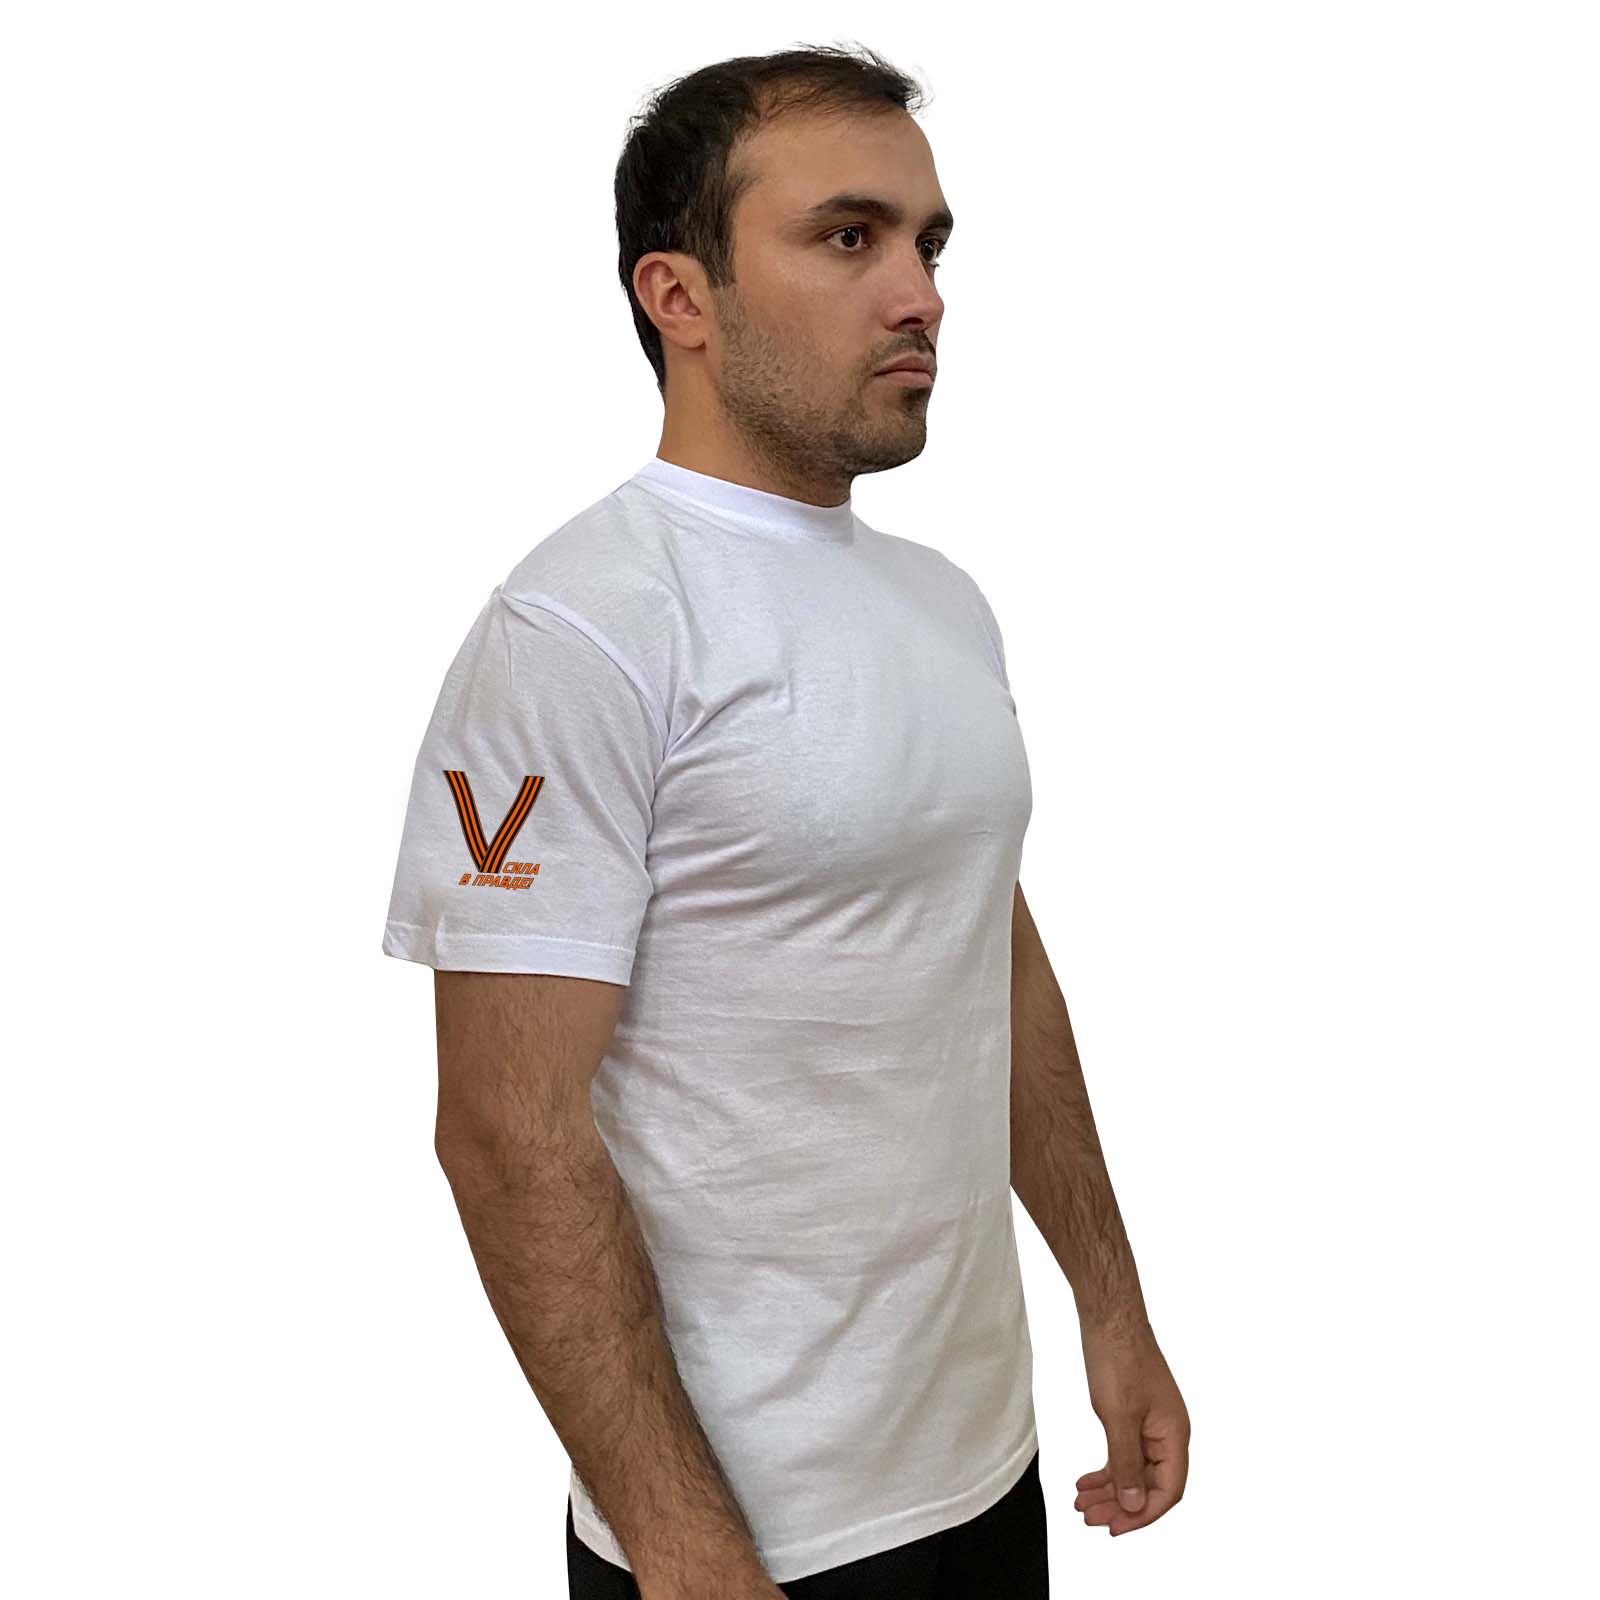 Белая футболка с георгиевским V на рукаве